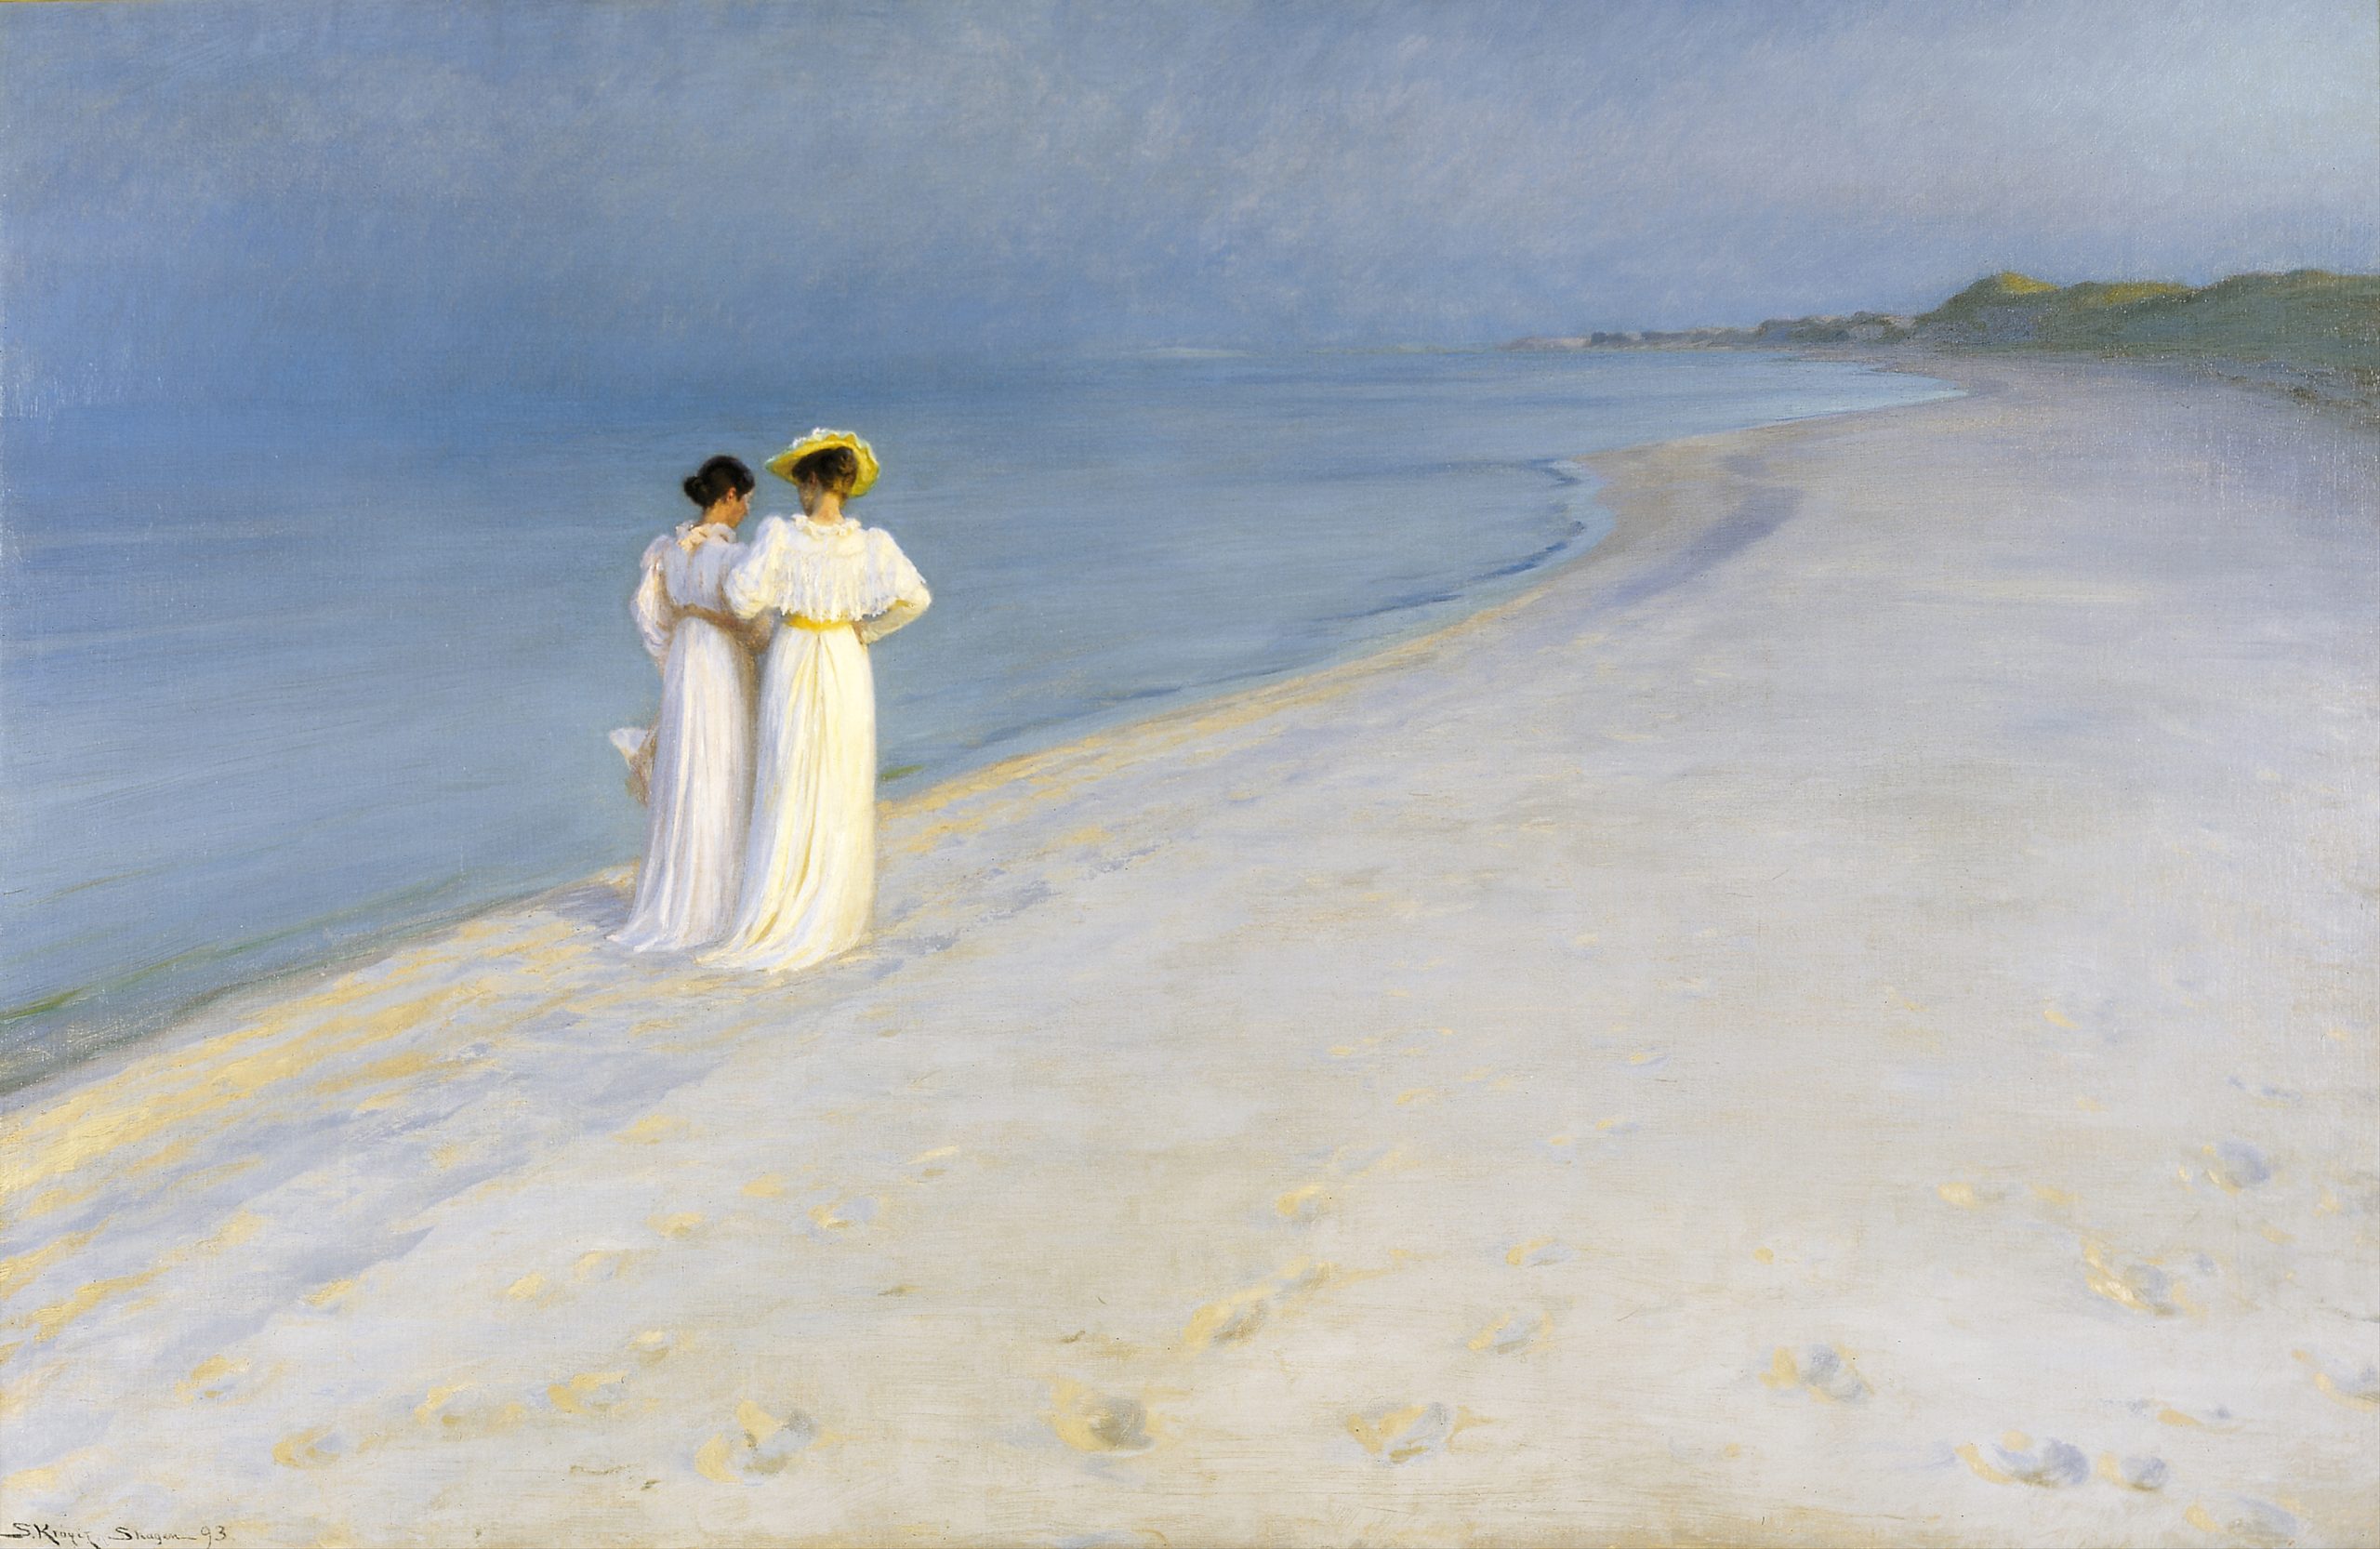 Two women in long dresses walking side-by-side along the beach